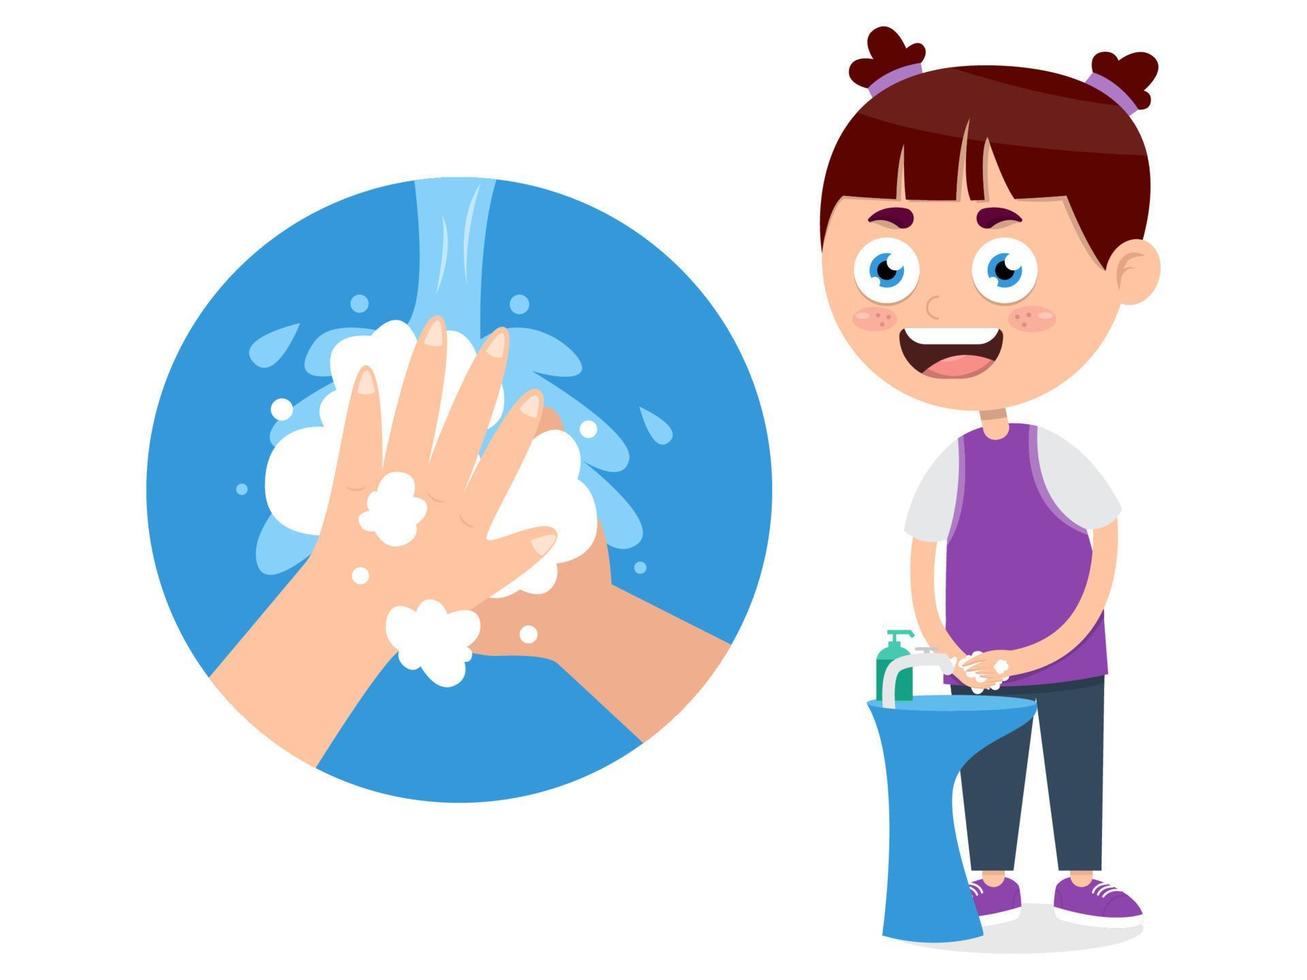 menina lavando as mãos com sabonete líquido para prevenir vírus, ilustração vetorial de desenho animado vetor